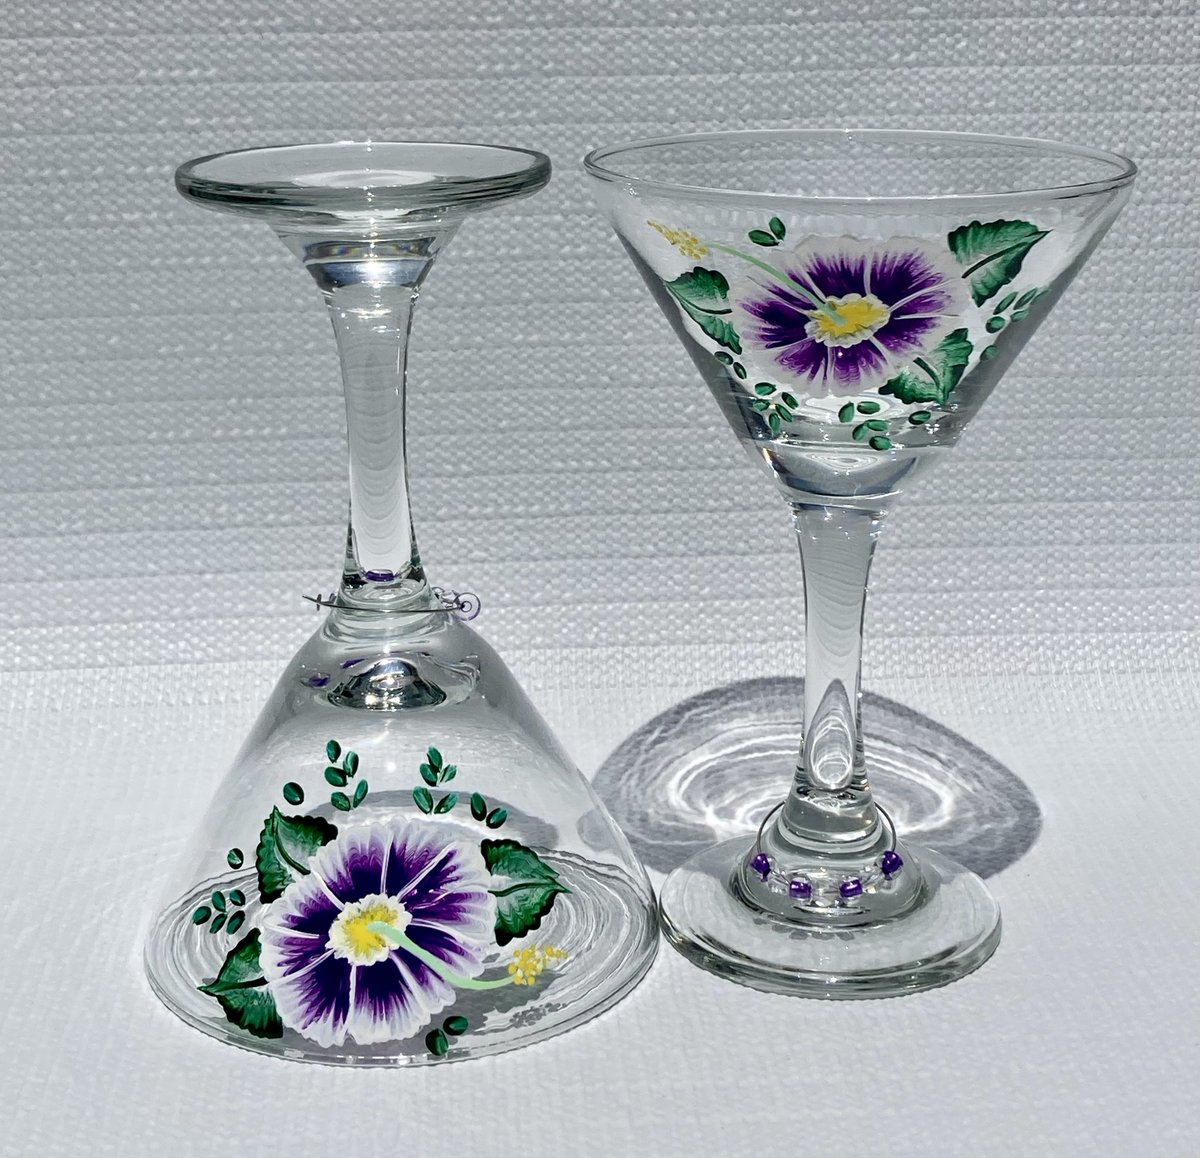 Cool martini lasses etsy.com/listing/123984… #martiniglasses #cocktailglasses #giftsforher #SMILEtt23 #etsy #mothersdaygift #EtsySeller #etsyshop